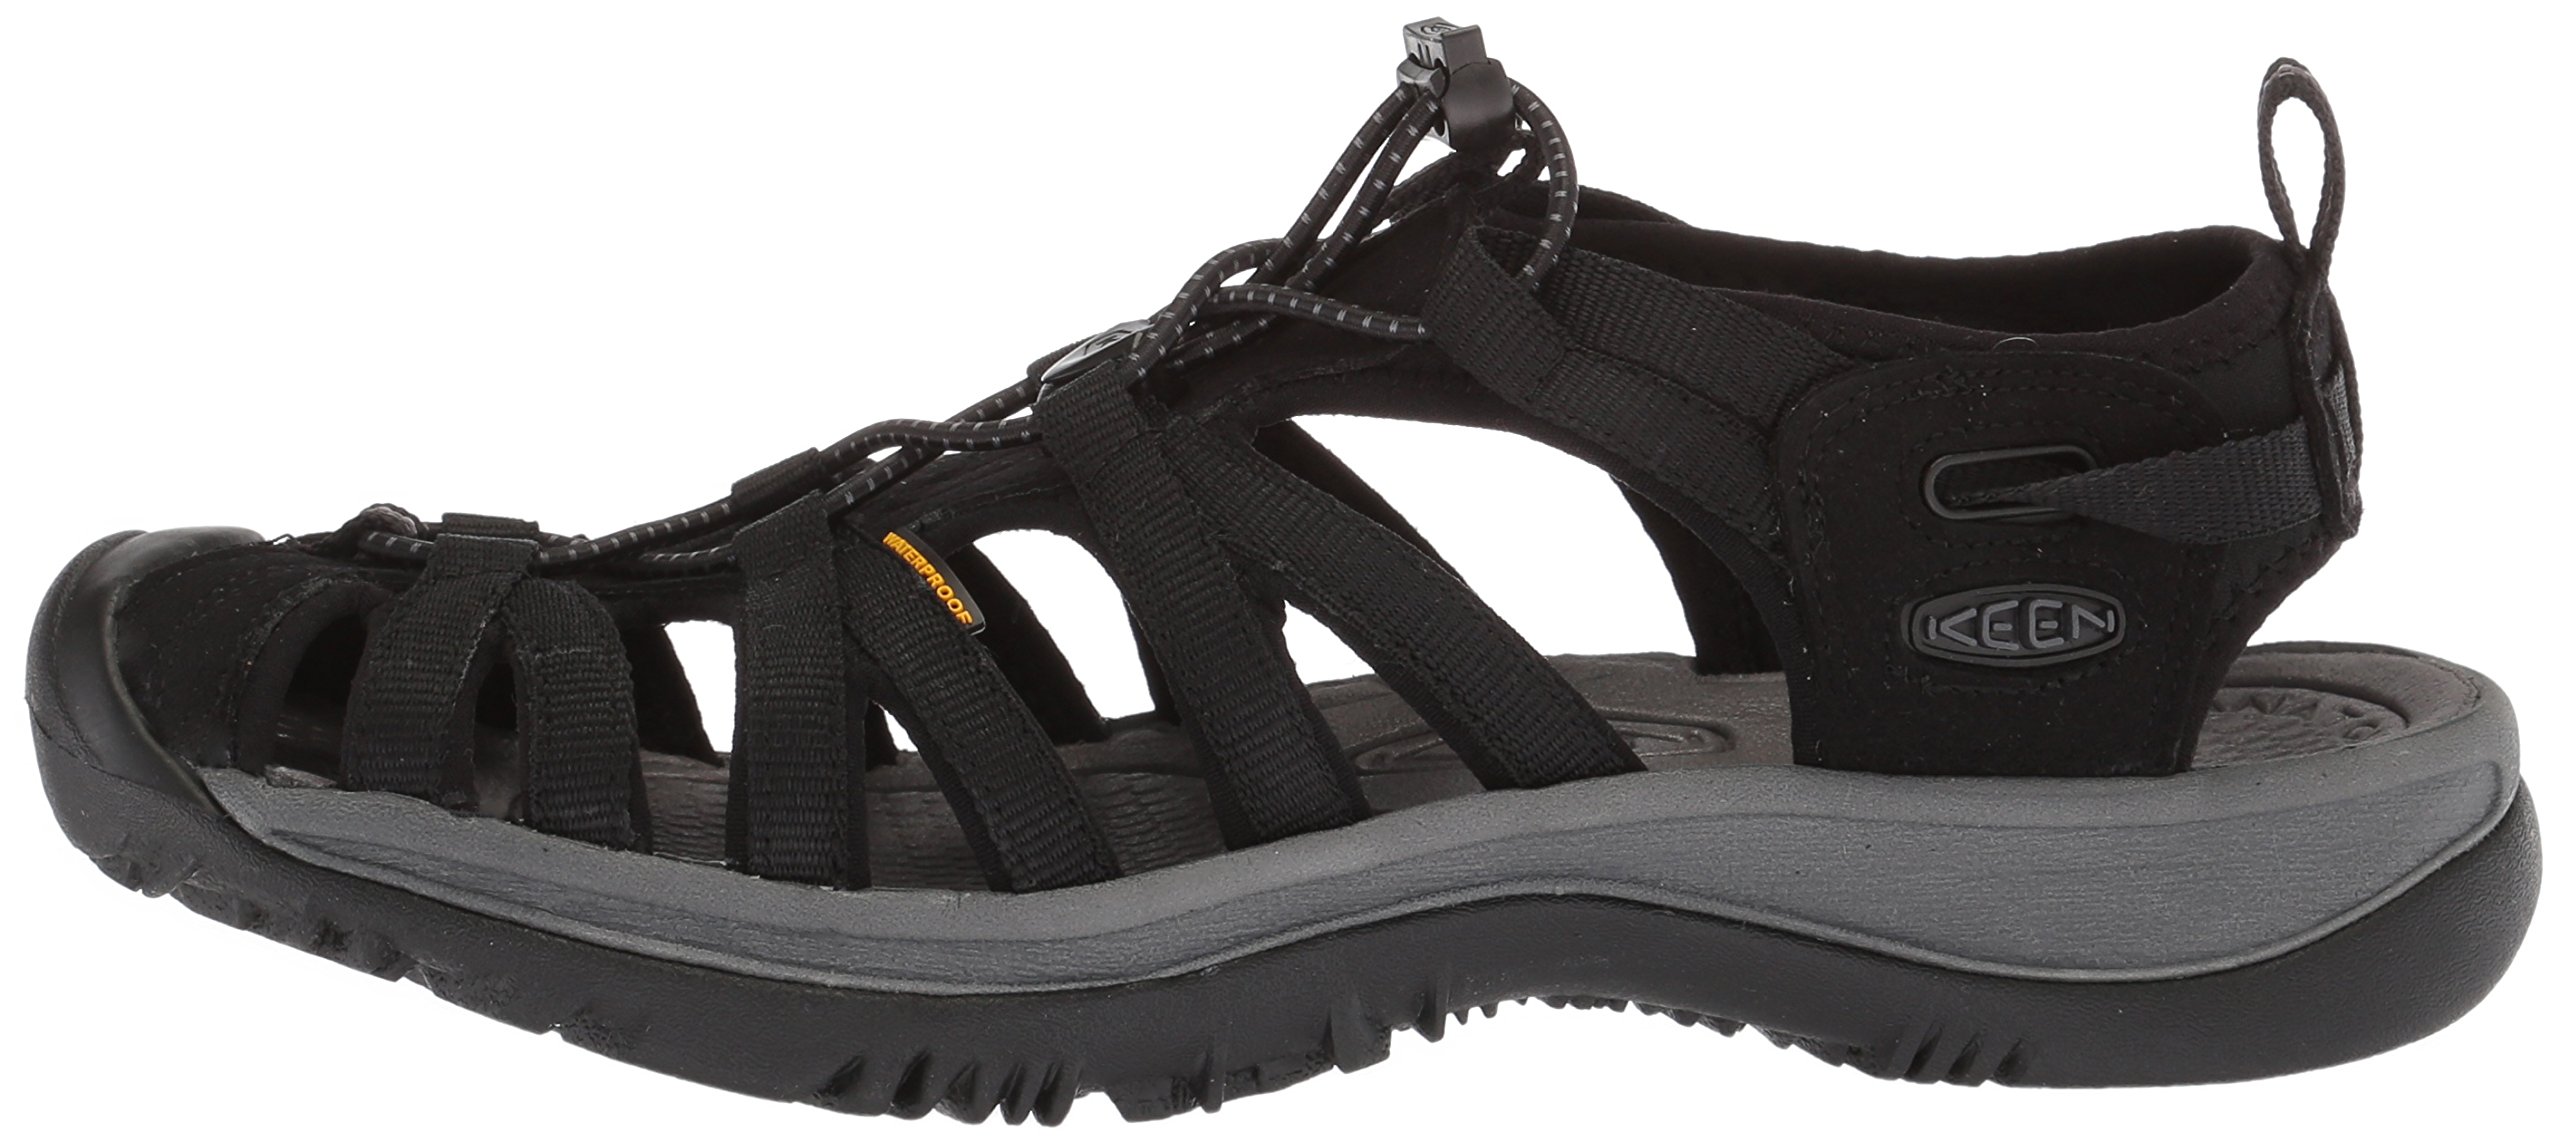 KEEN Women's Whisper Closed Toe Sport Sandals, Black/Magnet, 9.5